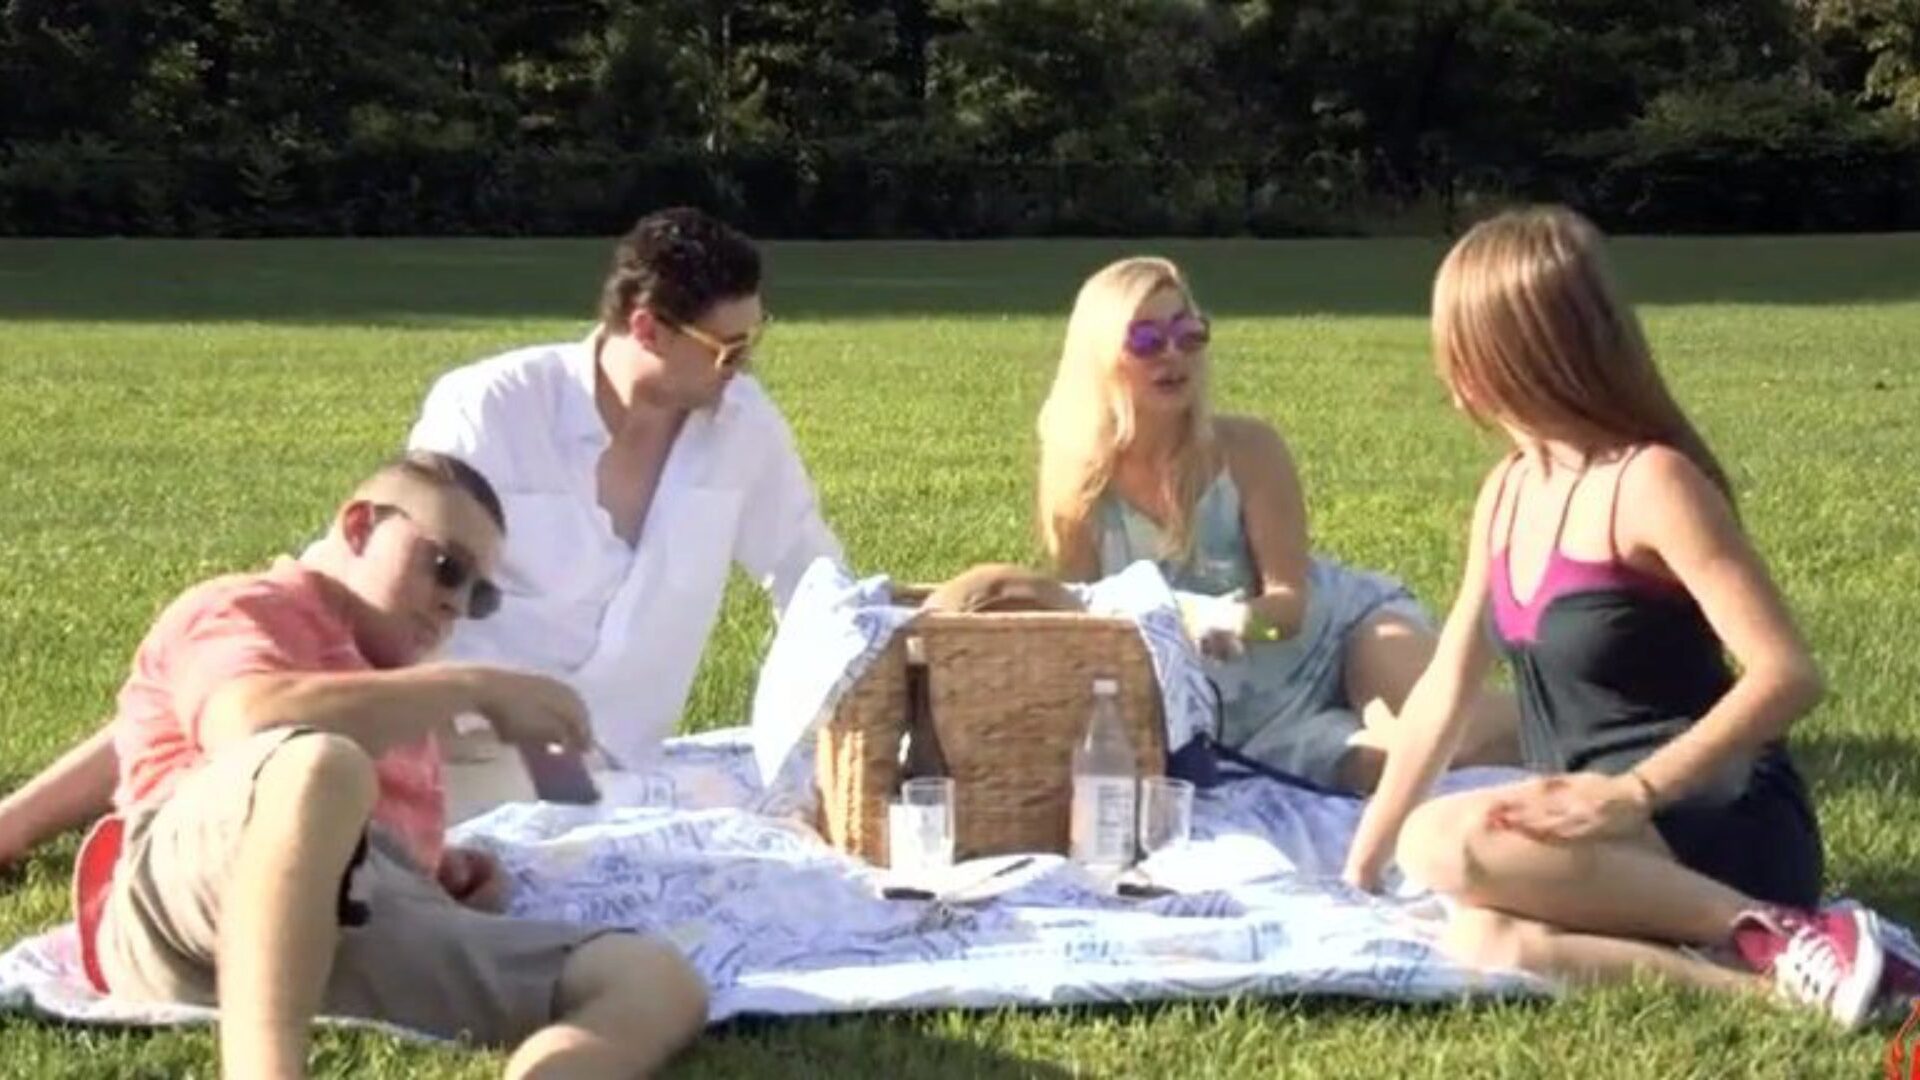 rodinný piknik část 1 (moderní tabuizovaná rodina)